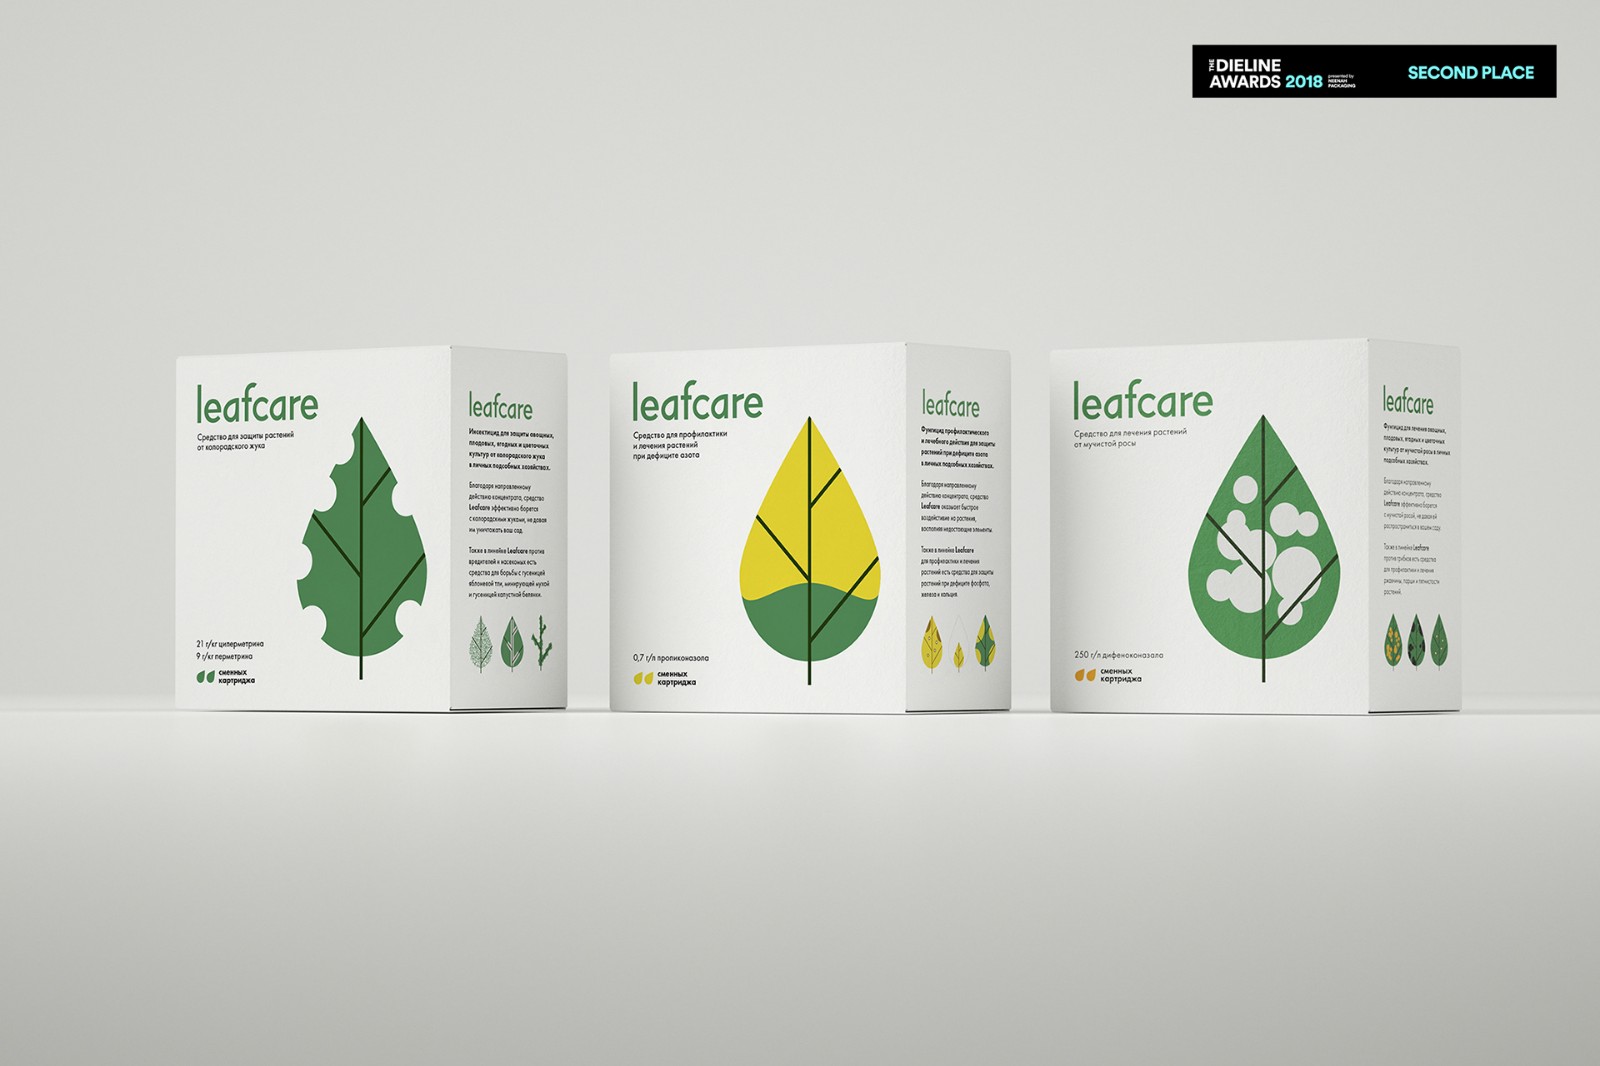 艺点绿植产品包装设计案例-每天一点创意 